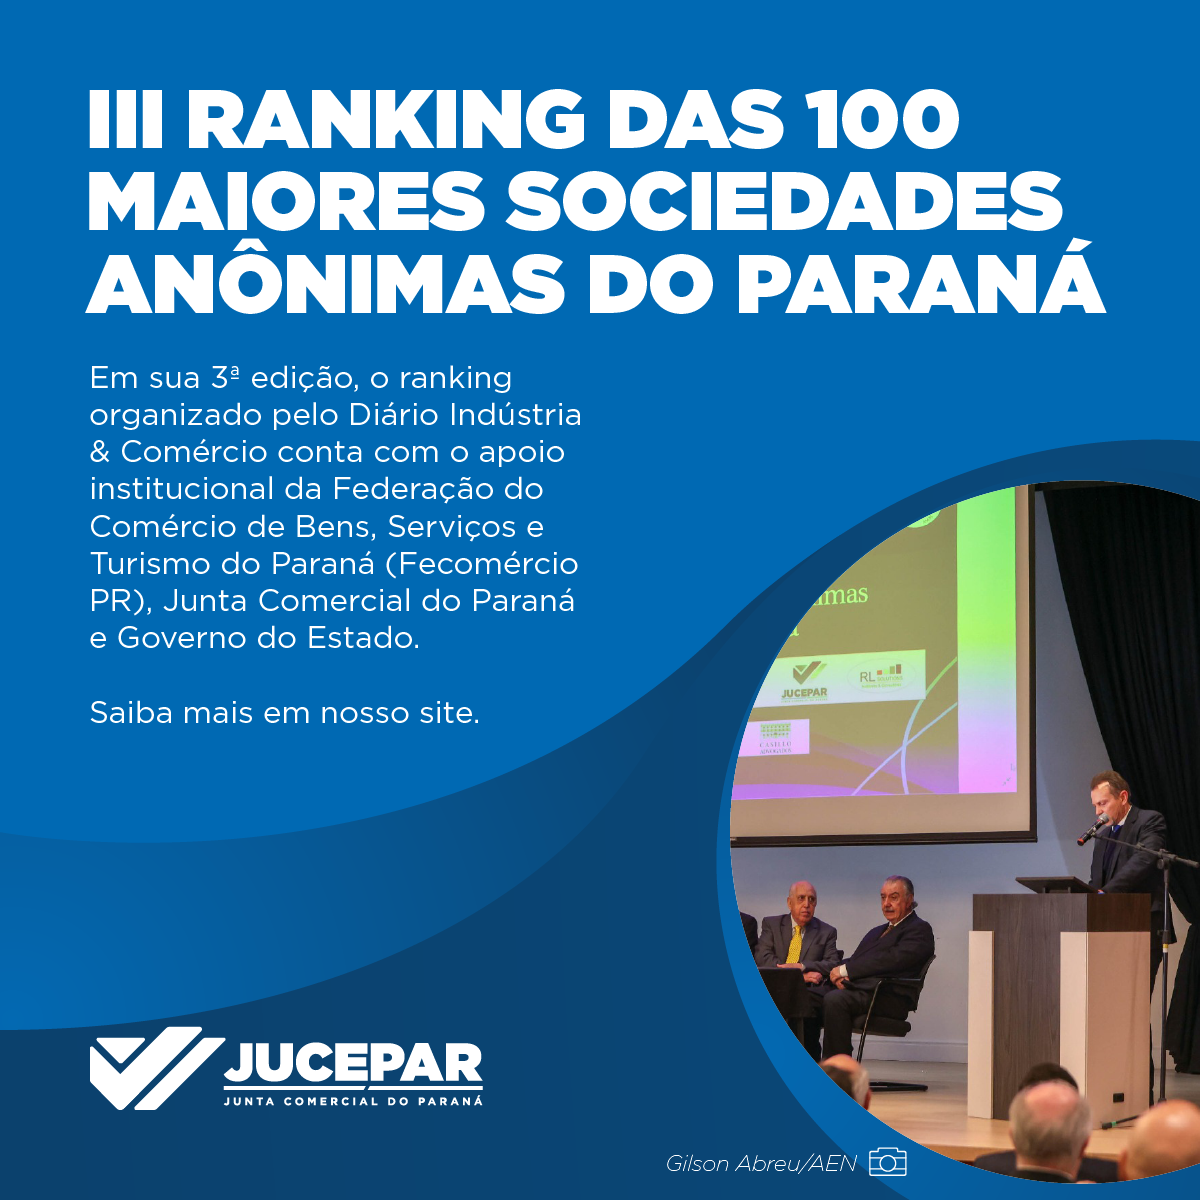 III Ranking das 100 Maiores Sociedades Anônimas do Paraná